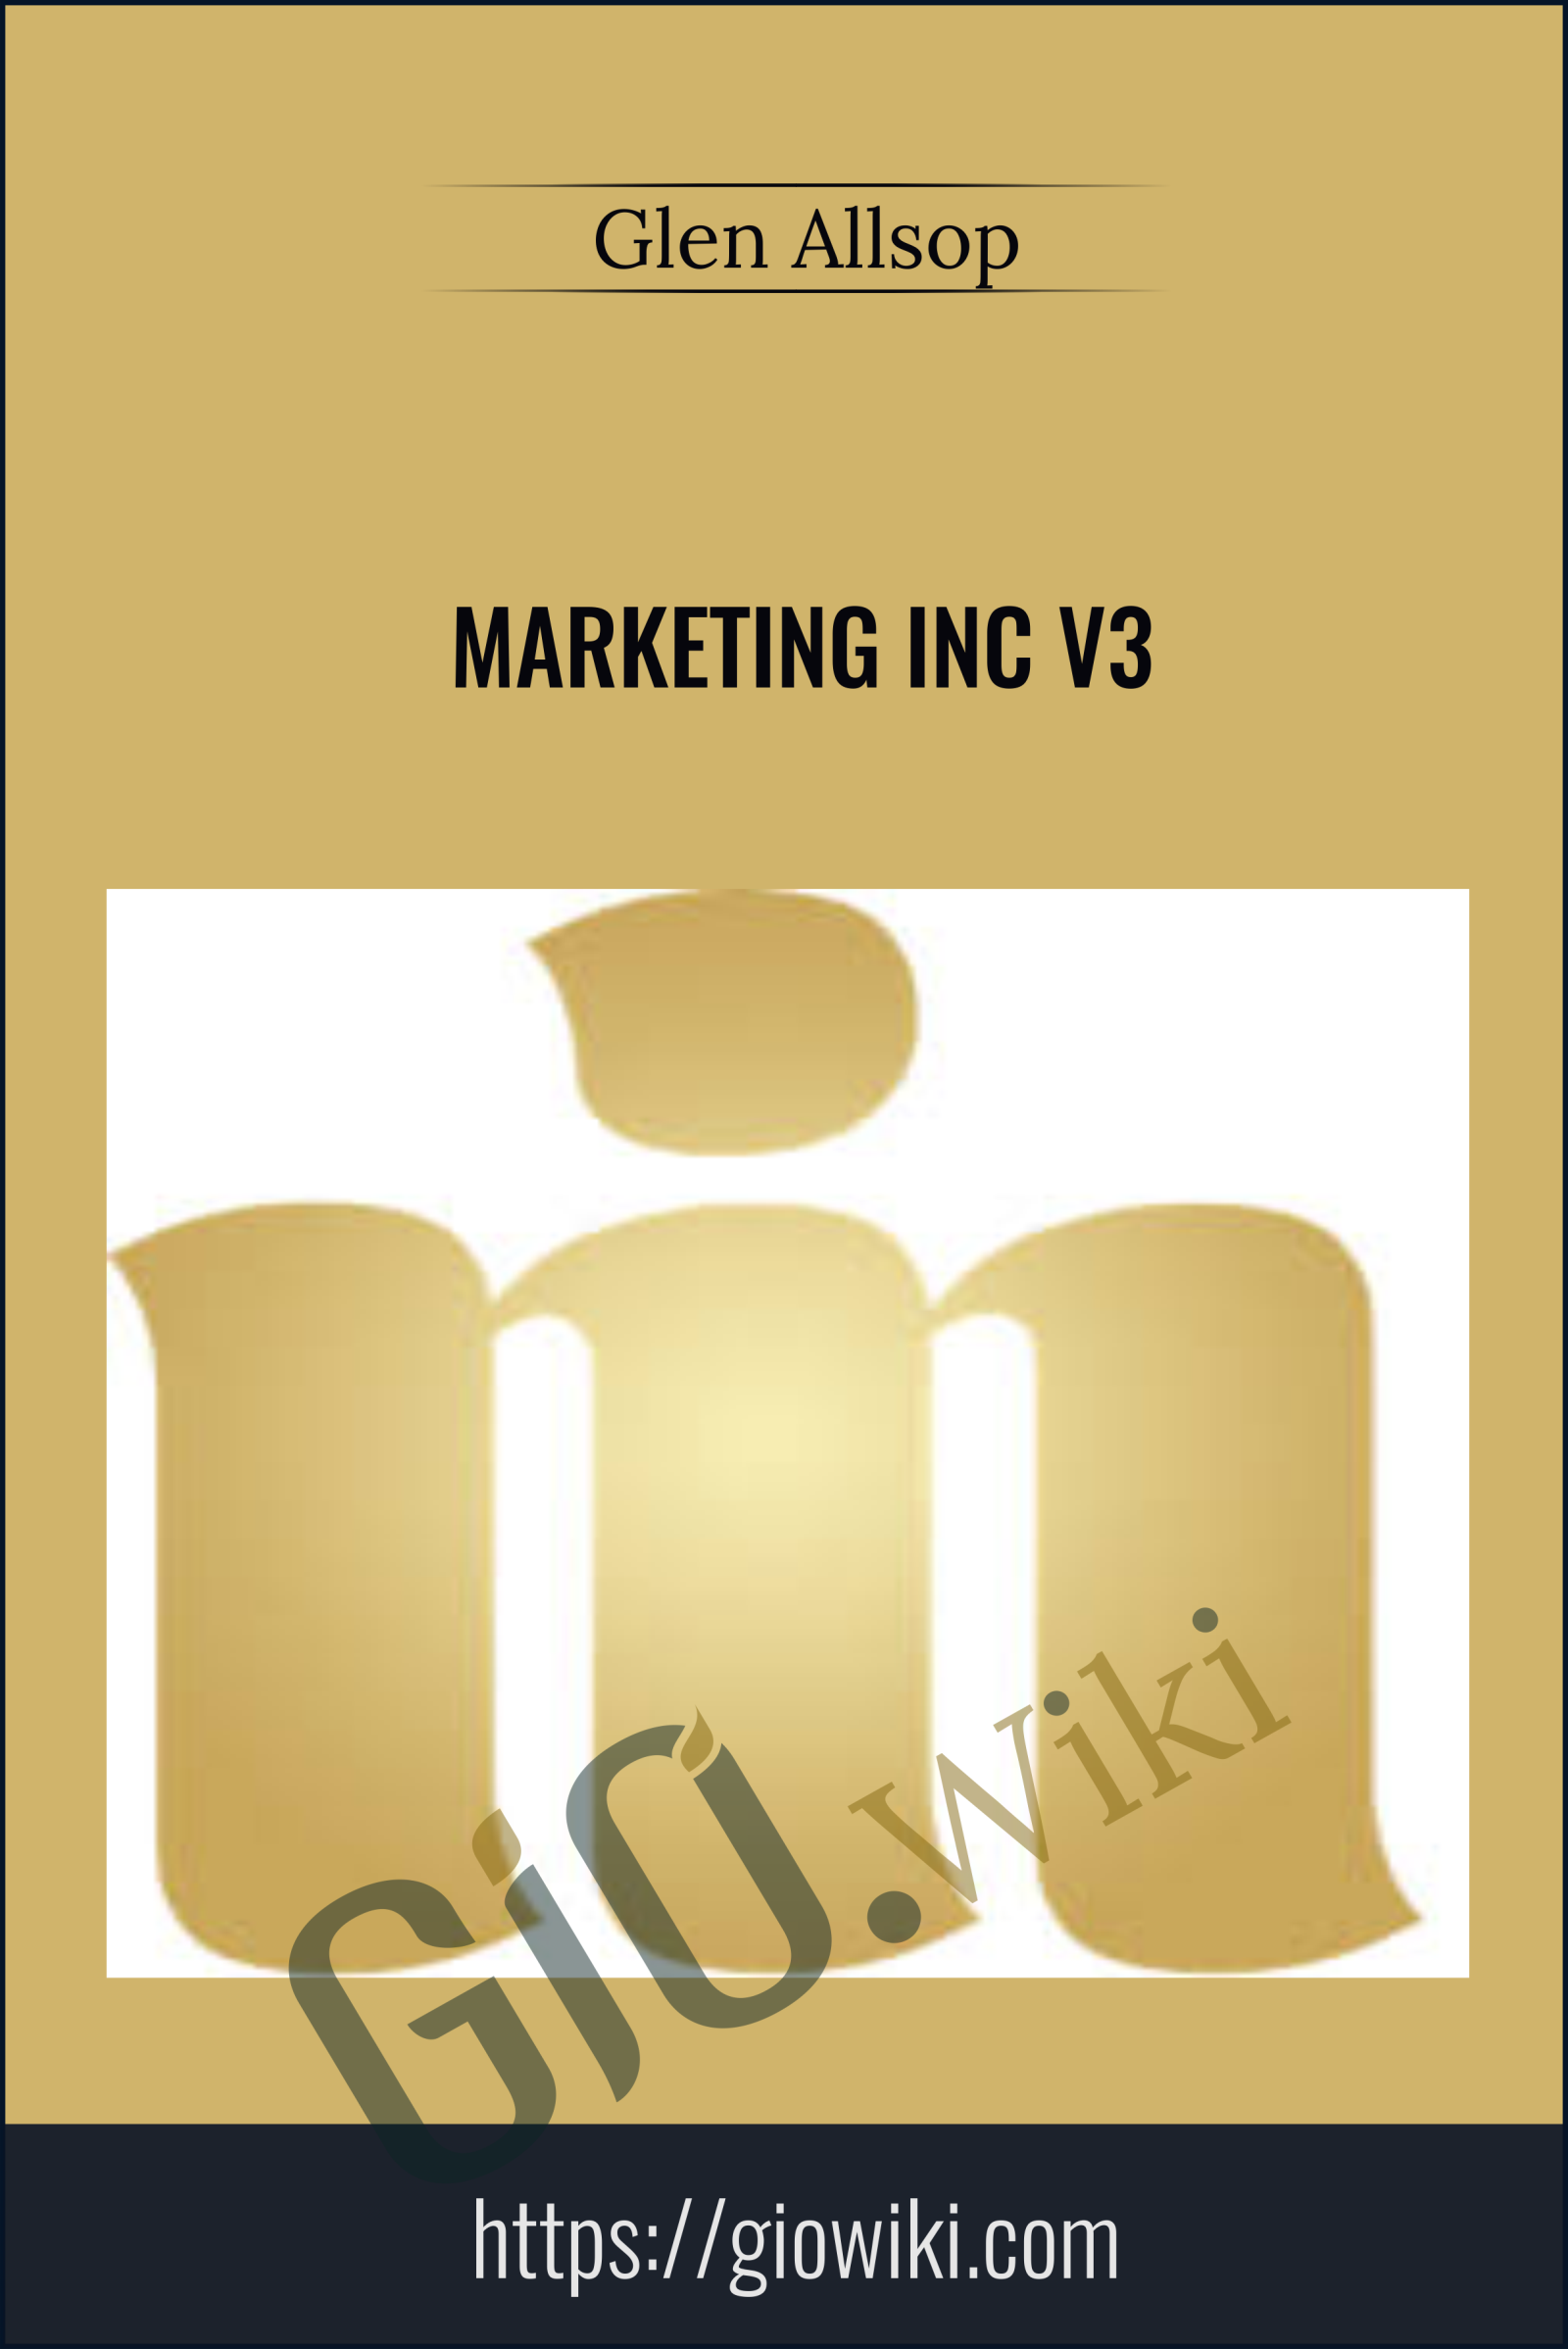 Marketing Inc V3 - Glen Allsop